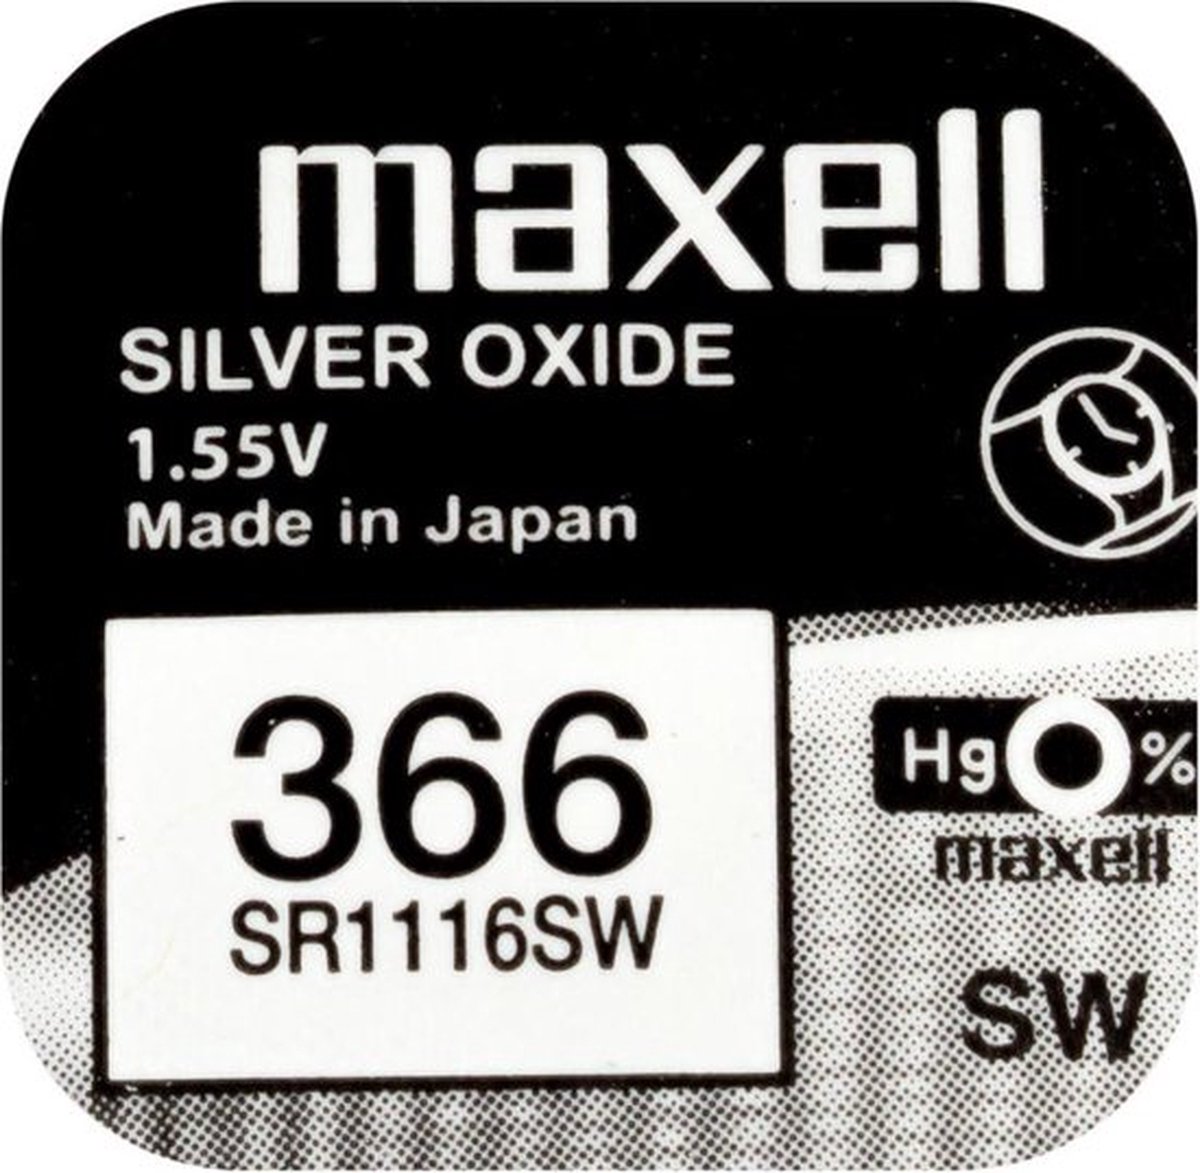 MAXELL - 366 - SR1116SW - Zilveroxide Knoopcel - horlogebatterij - 2 (twee) stuks